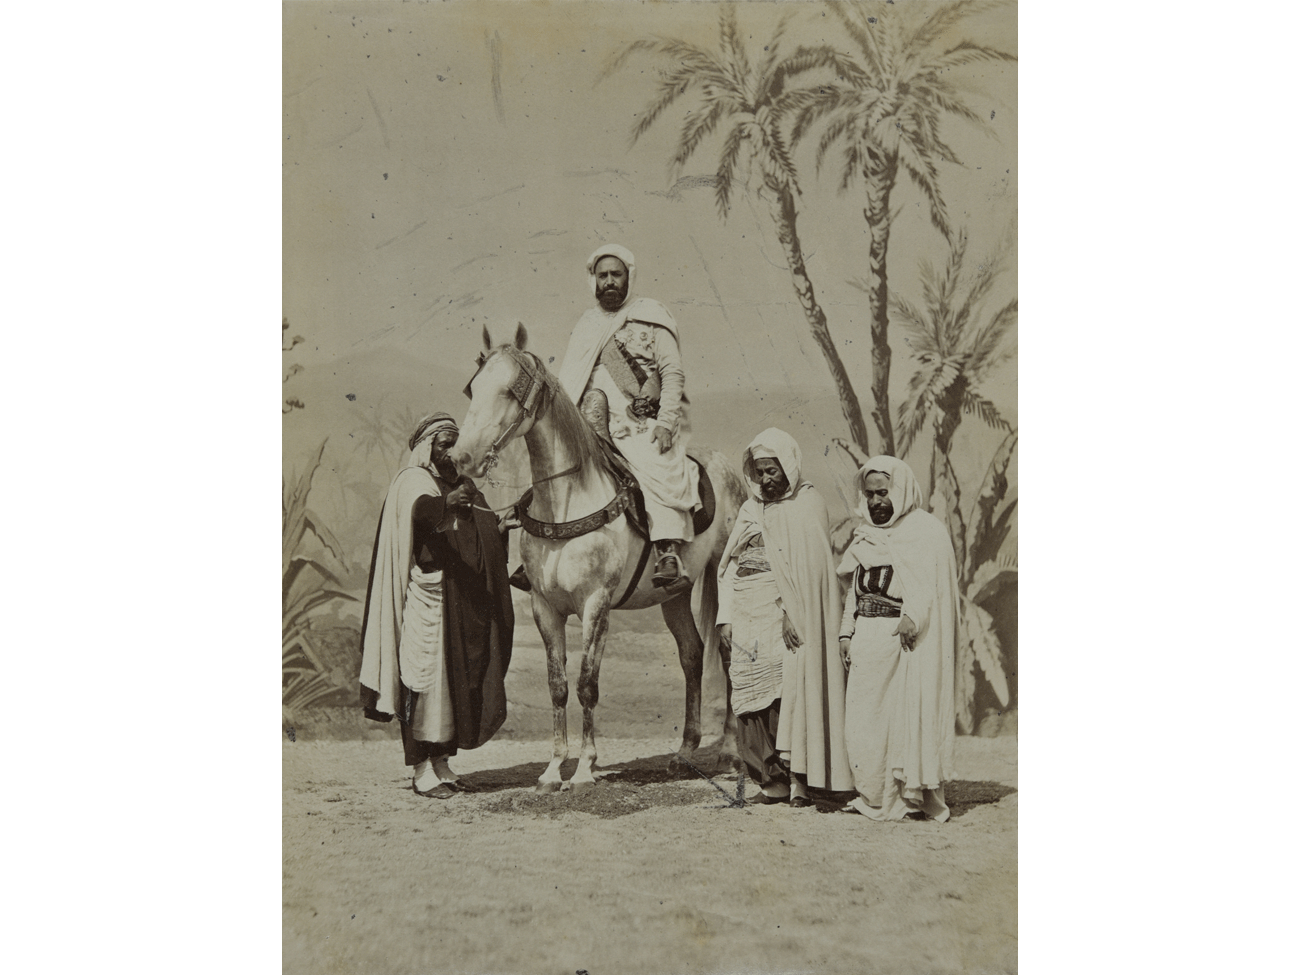 Louis Jean Delton, Portrait d'Abd el-Kader à cheval, 1865, photographie. Archives nationales d'outre-mer, Aix-en-Provence © FR ANOM. Aix-en-Provence (139 APOM/2) – Tous droits réservés